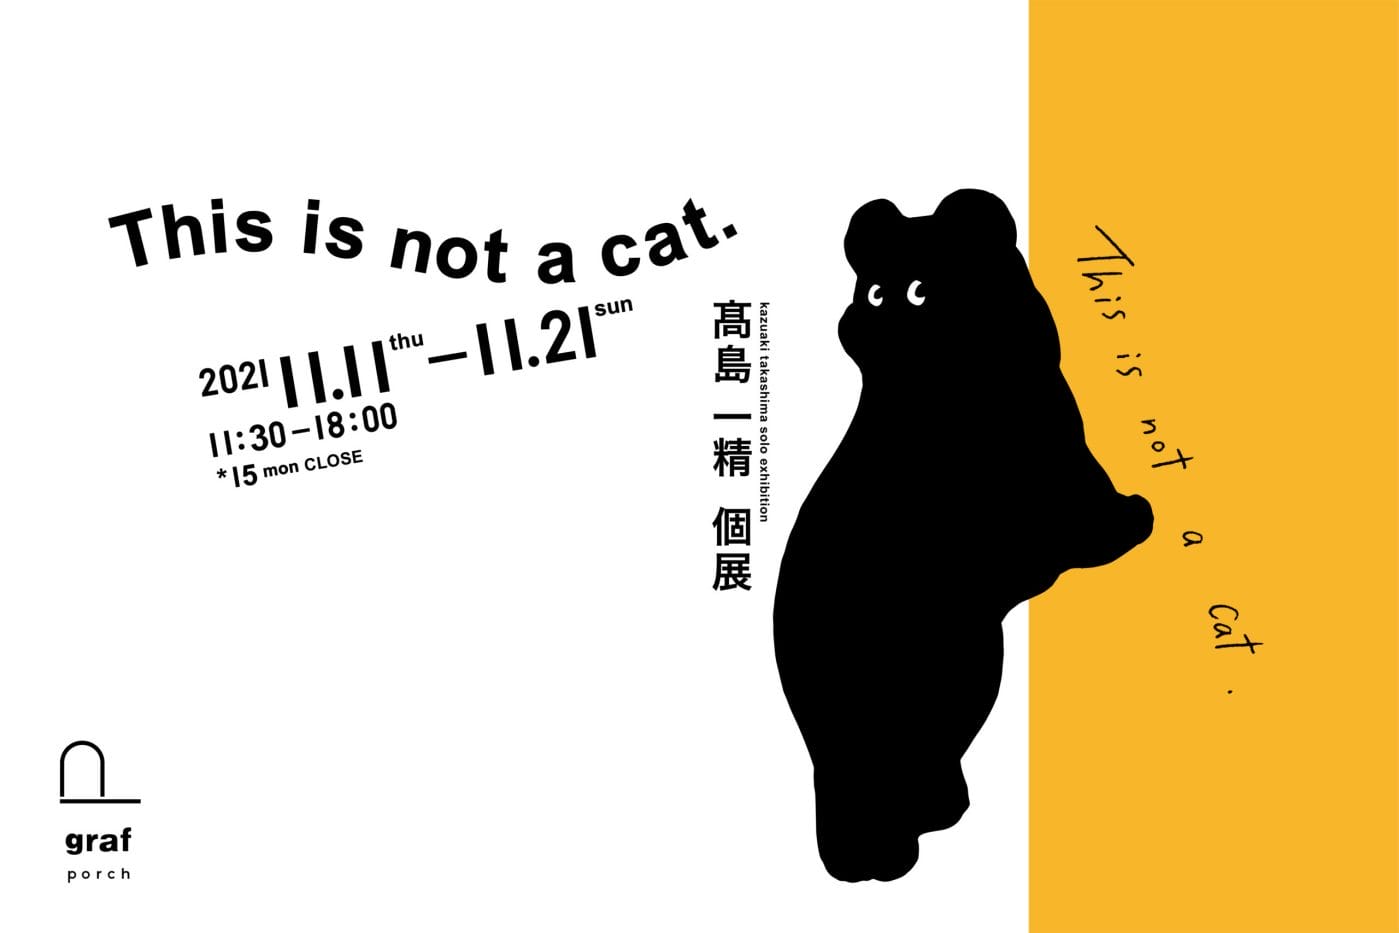 ファッションデザイナー・髙島一精による 個展「This is not a cat.」がgraf porchにて開催。